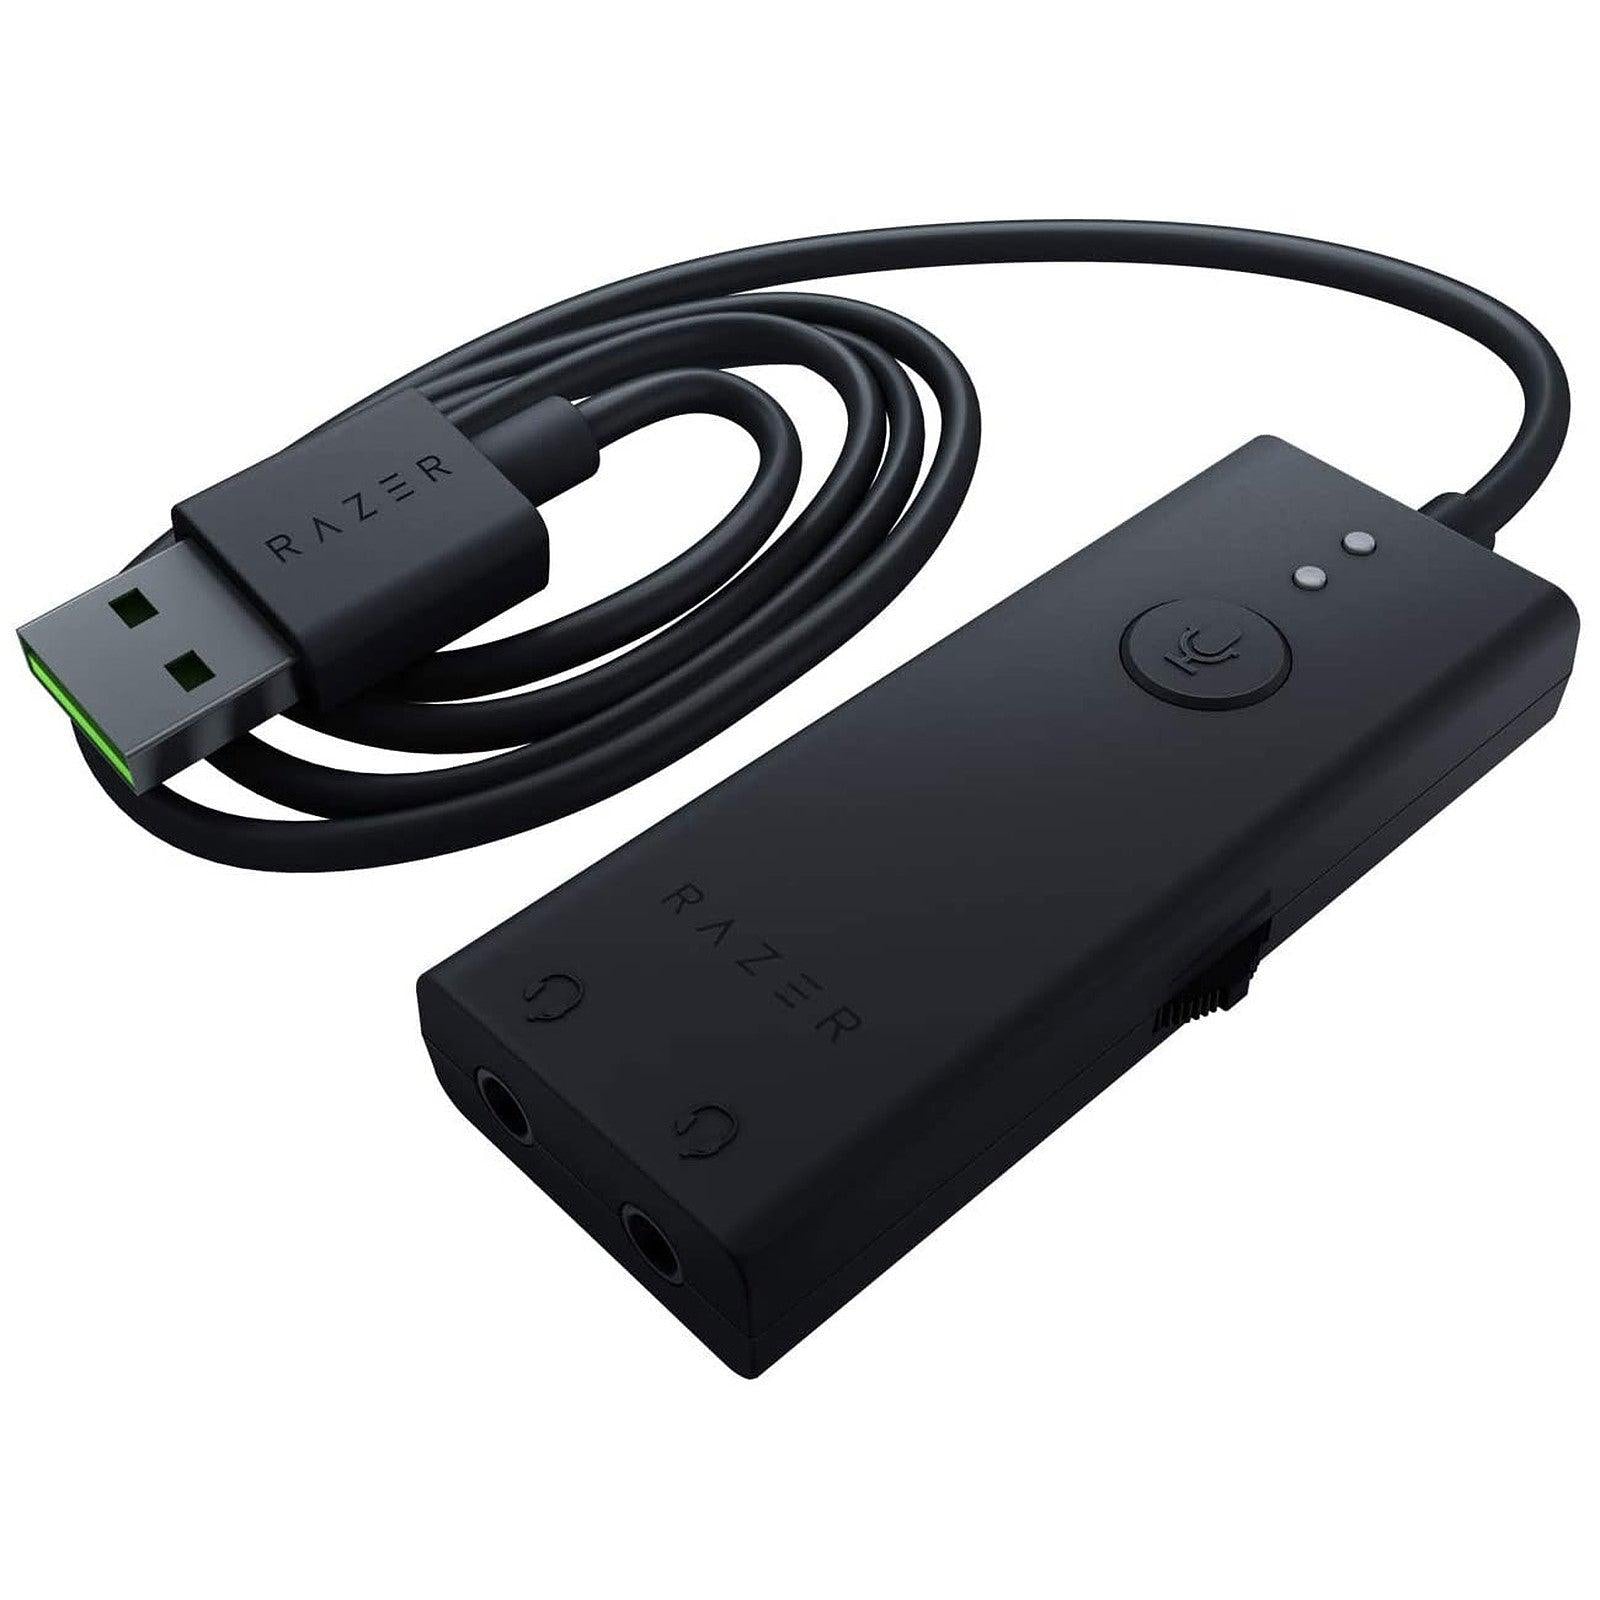 Razer USB Audio Enhancer maroc Prix carte son externe pas cher - smartmarket.ma